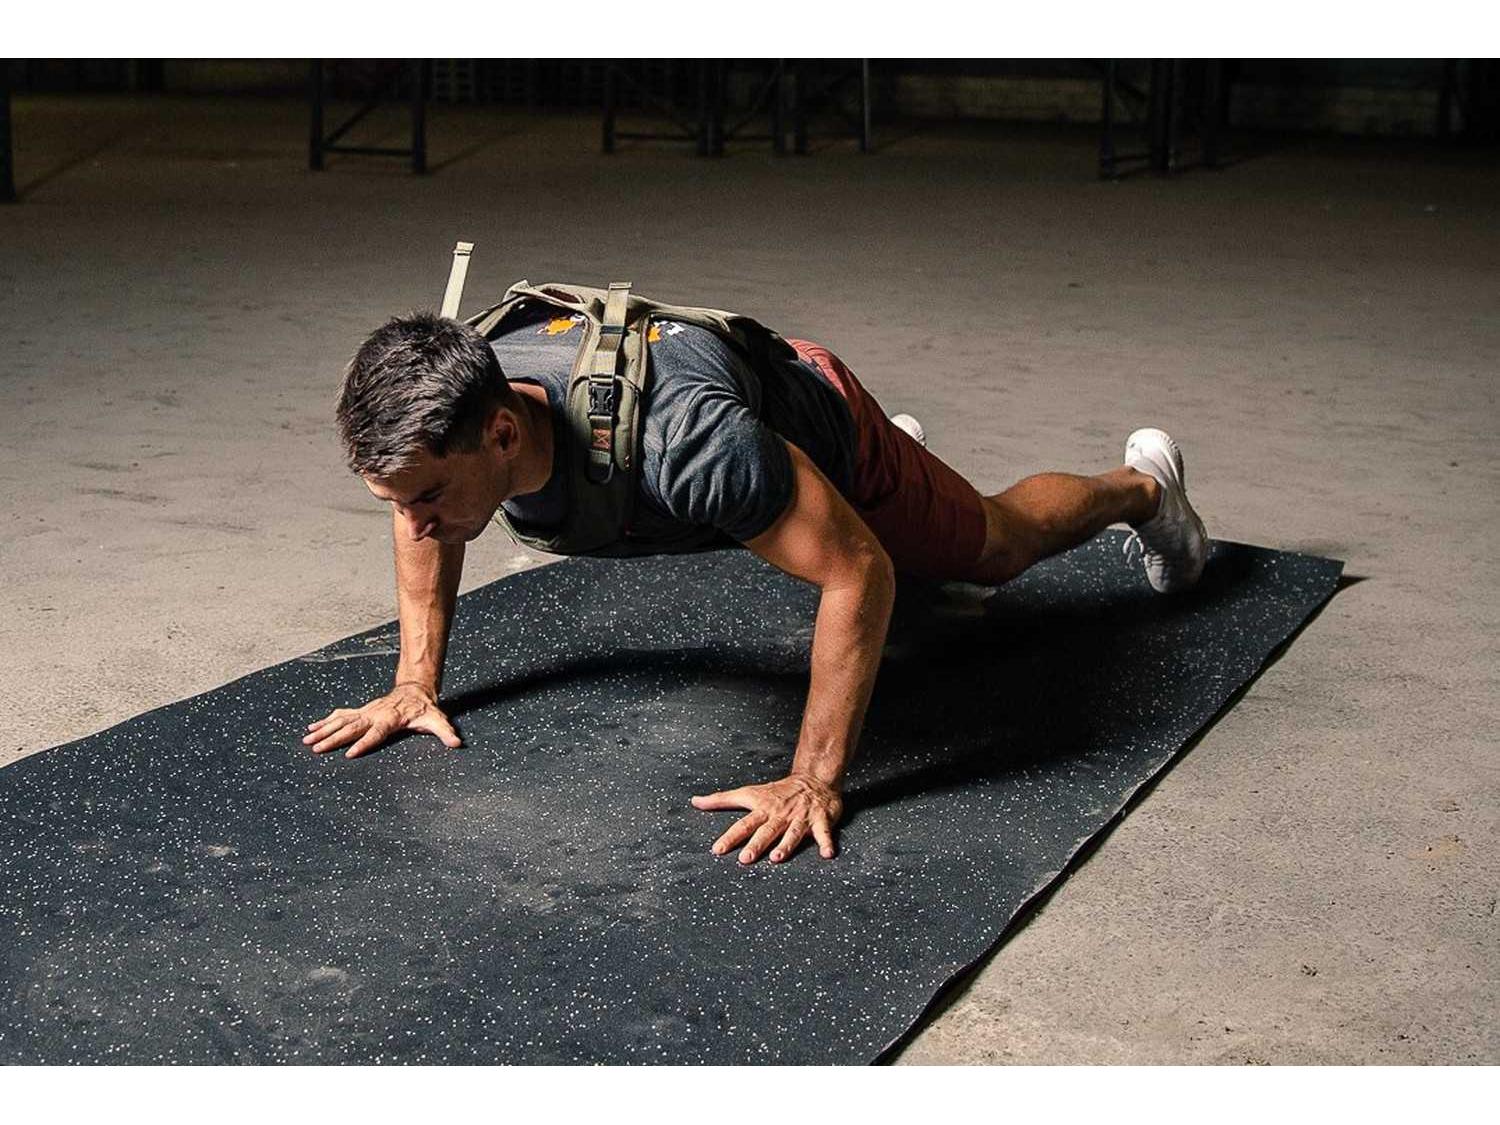 Sportif en train de faire des pompes sur tapis de sol - LEVEL addict